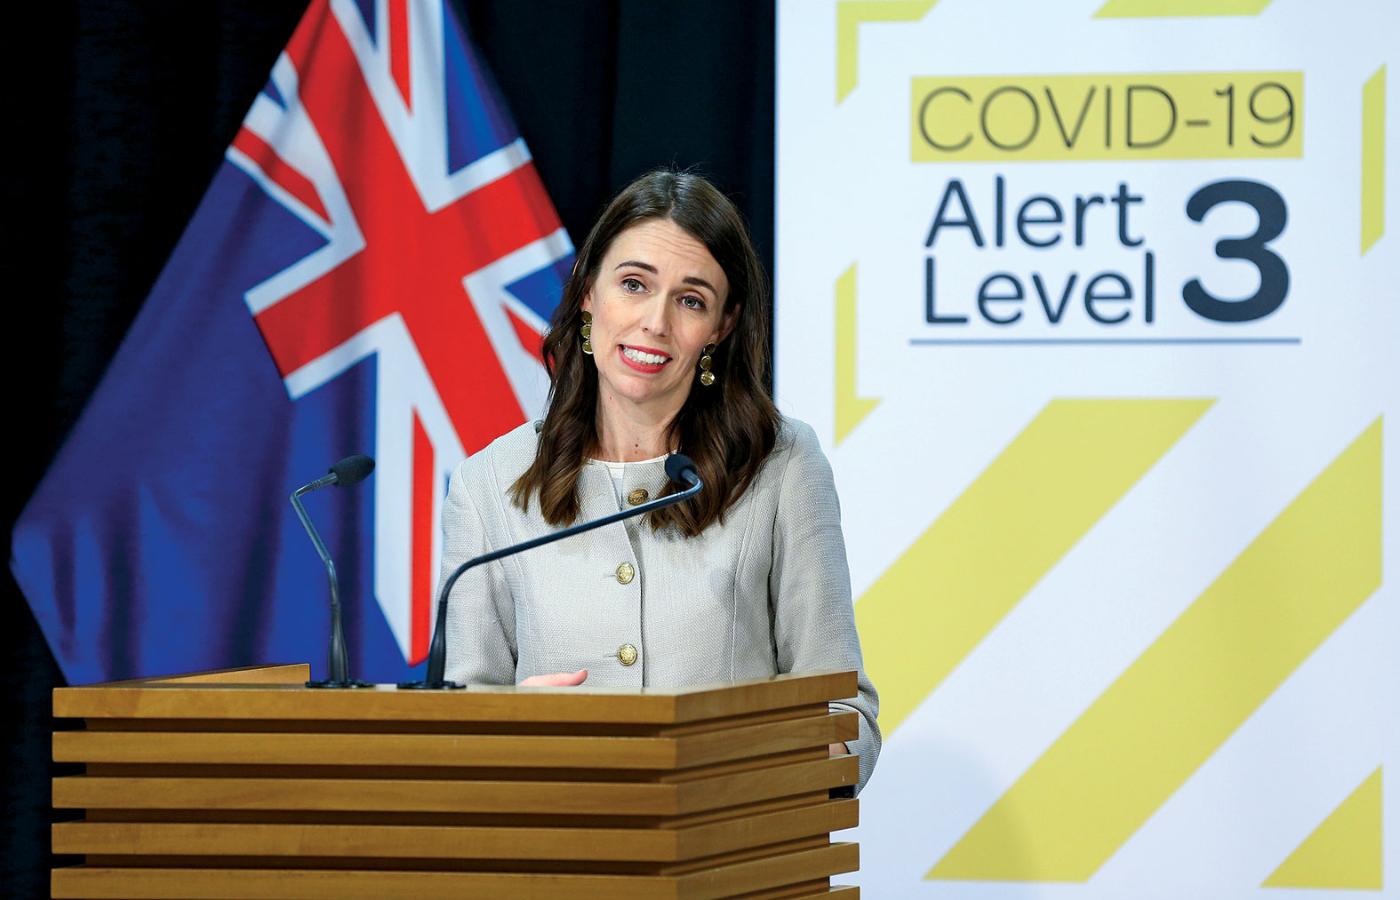 Nowa Zelandia opanowała sytuację z koronawirusem. Na zdjęciu premier kraju - Jacinda Ardern.